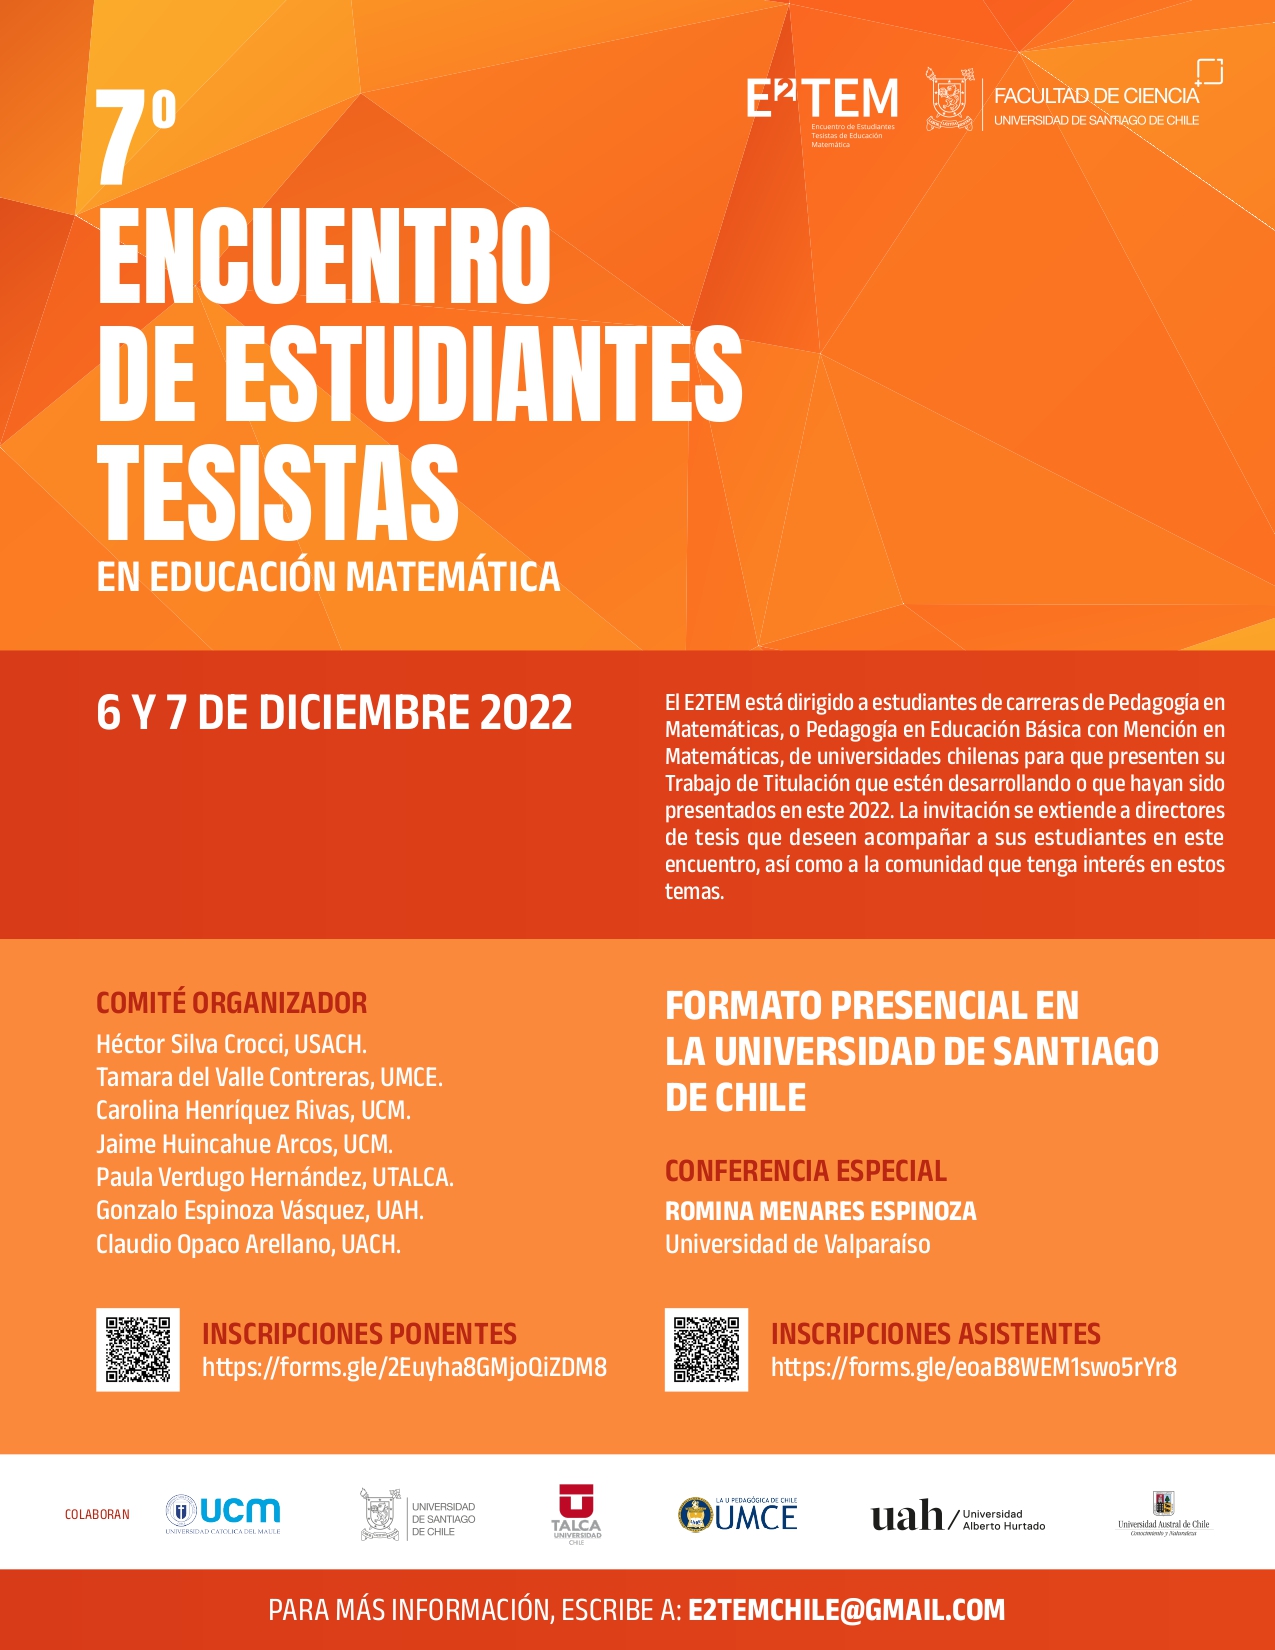 7° ENCUENTRO DE ESTUDIANTES TESISTAS EN EDUCACIÓN MATEMÁTICA (E2TEM)